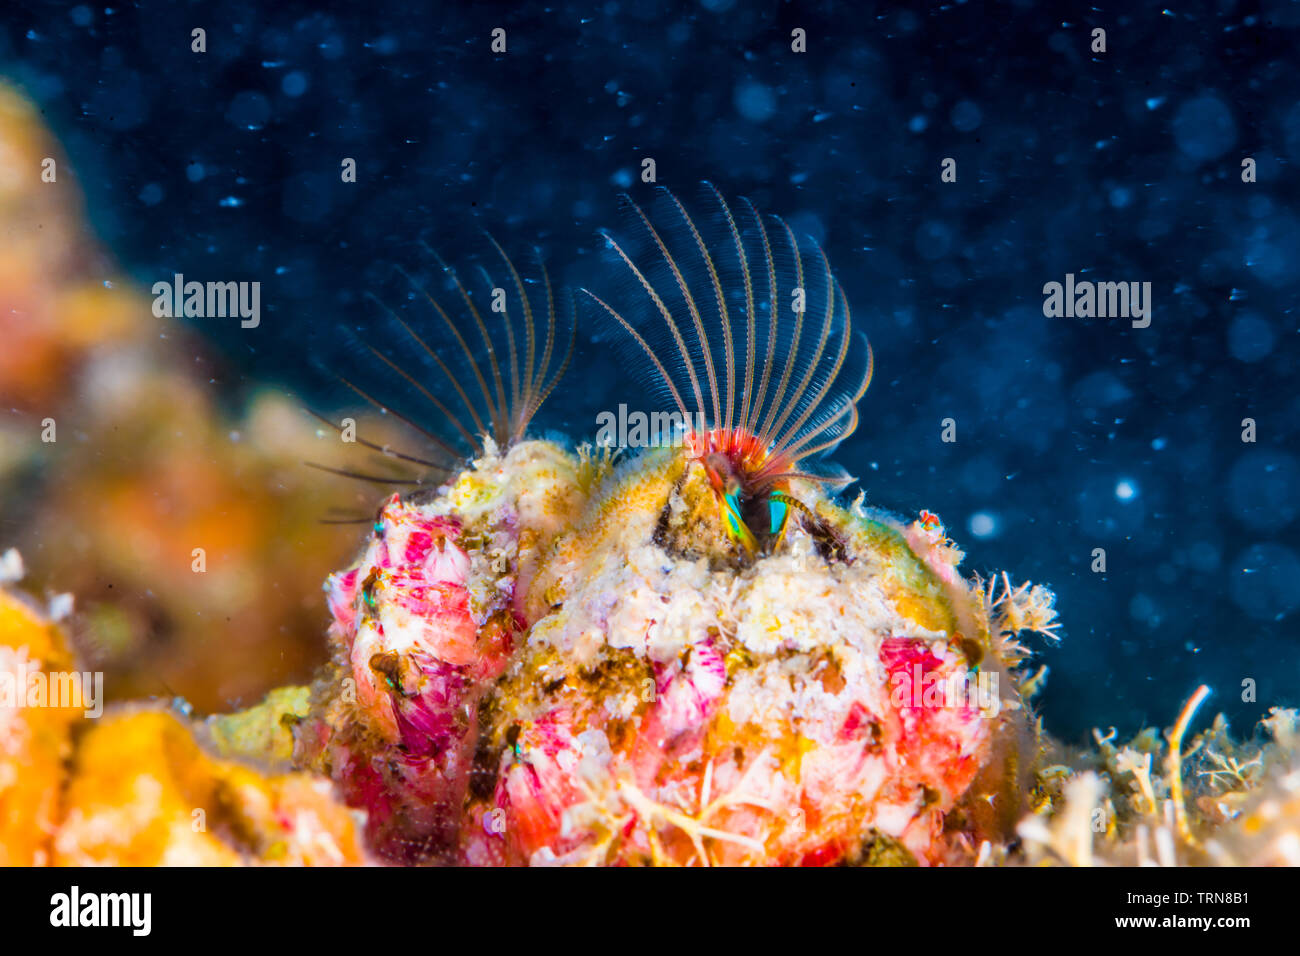 Acorn barnacles (Megabalanus rosa Pilsbry, 1916 ) diffusione ampia loro cirriped. Foto Stock